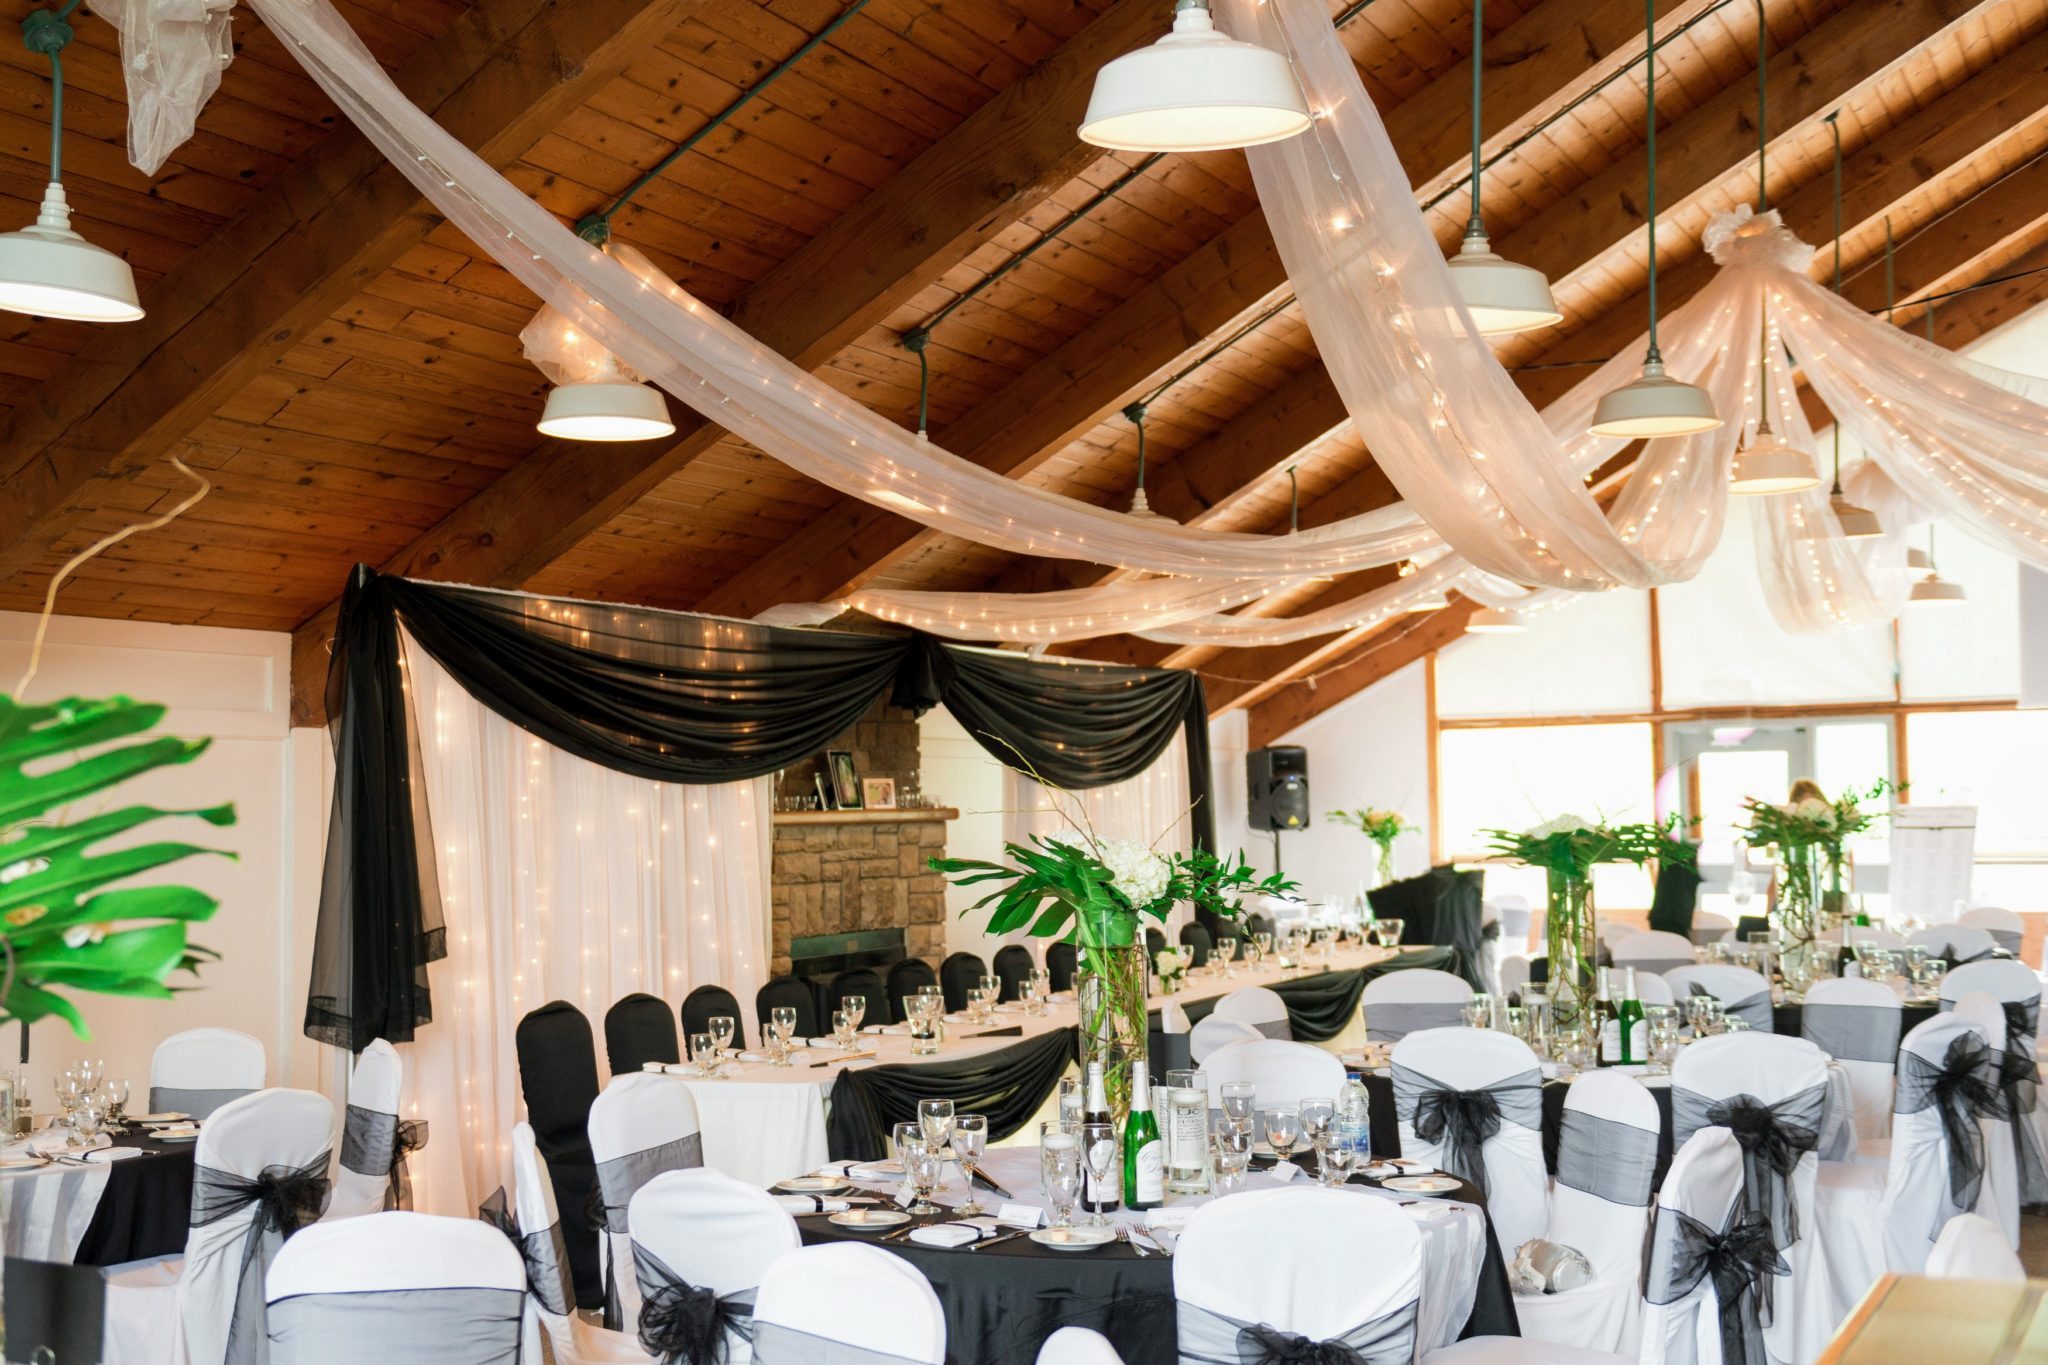 Unique Wedding Venue Ontario - Outdoor Wedding Venue in Ontario - Barn Wedding Venue Ontario - Forest wedding venue ontario